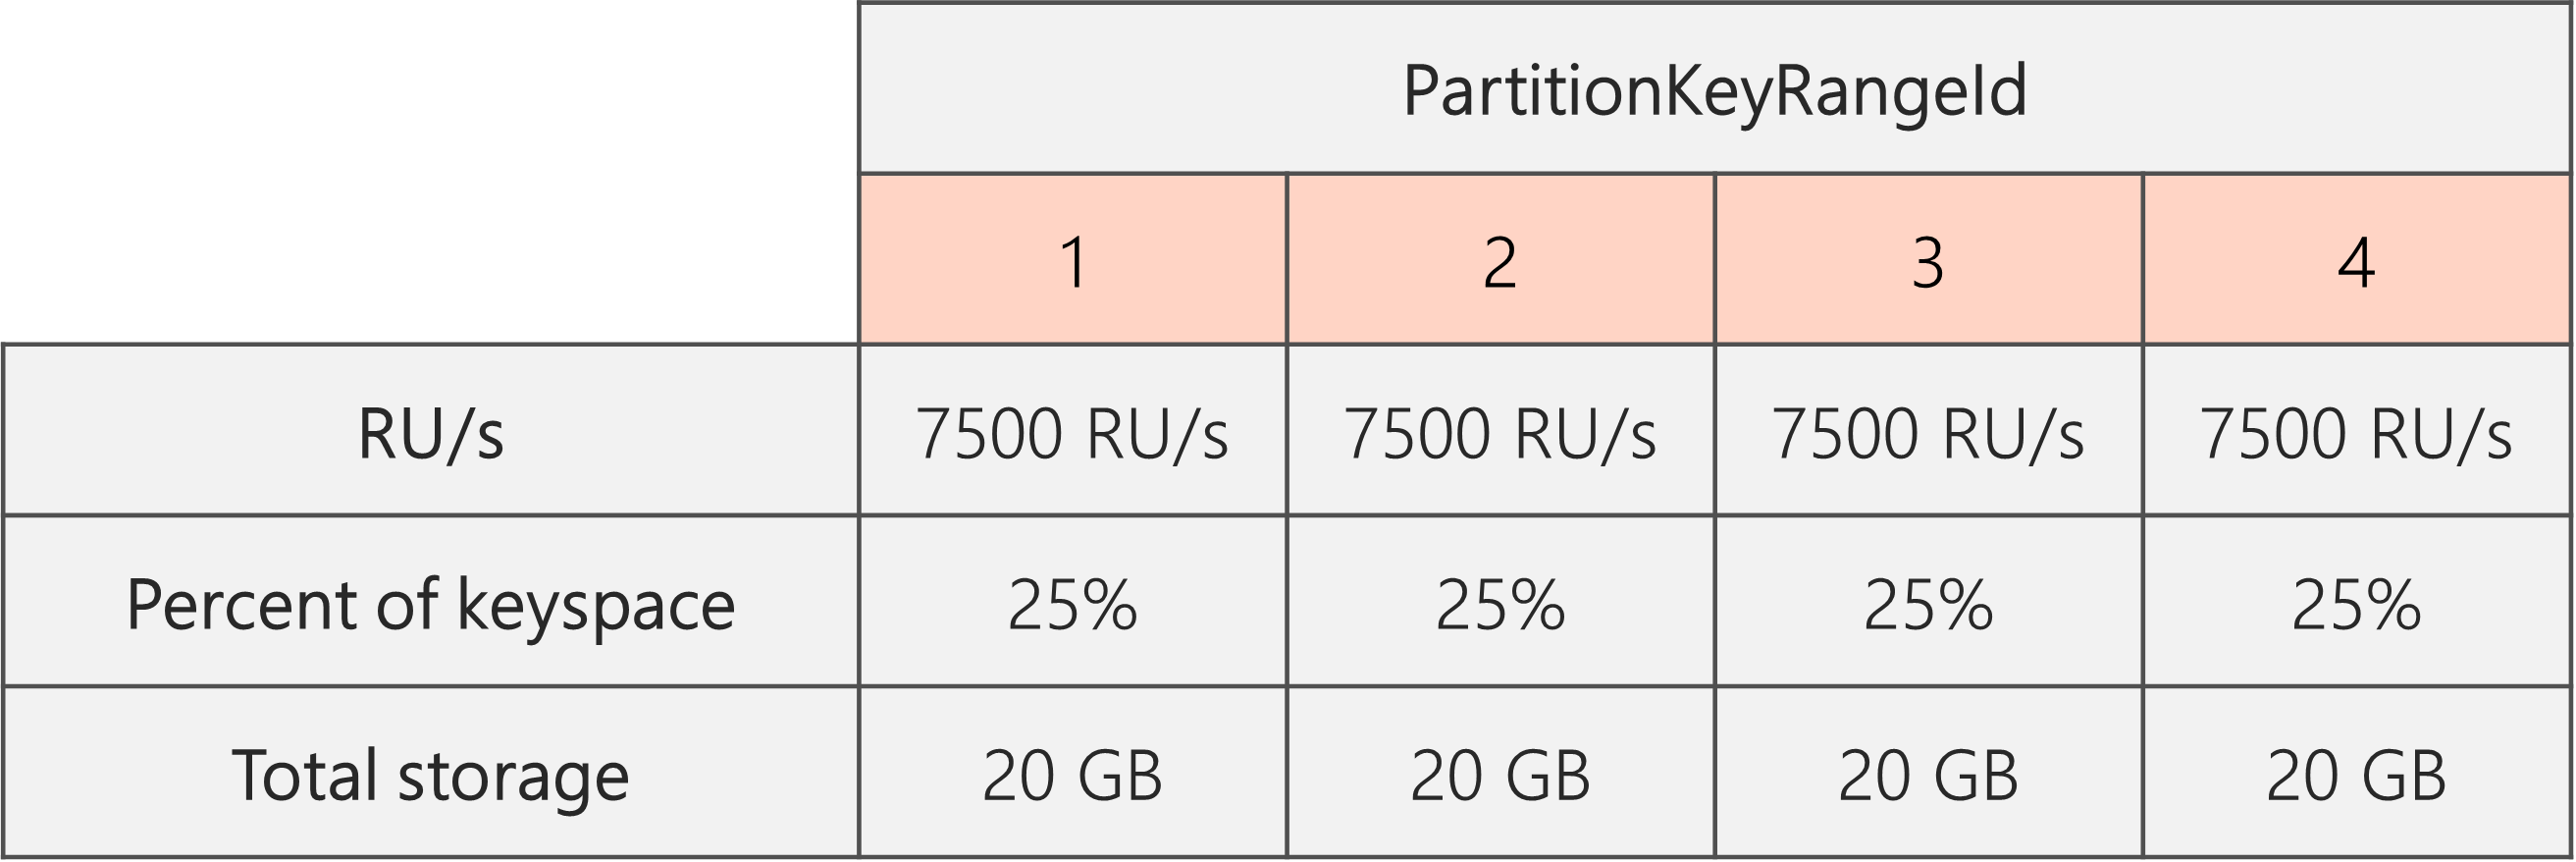 Una vez se haya completado la división y se hayan reducido las RU/s de 40 000 RU/s a 30 000 RU/s, hay 4 PartitionKeyRangeIds, cada uno con 7500 RU/s y el 25 % del espacio de claves total (20 GB)